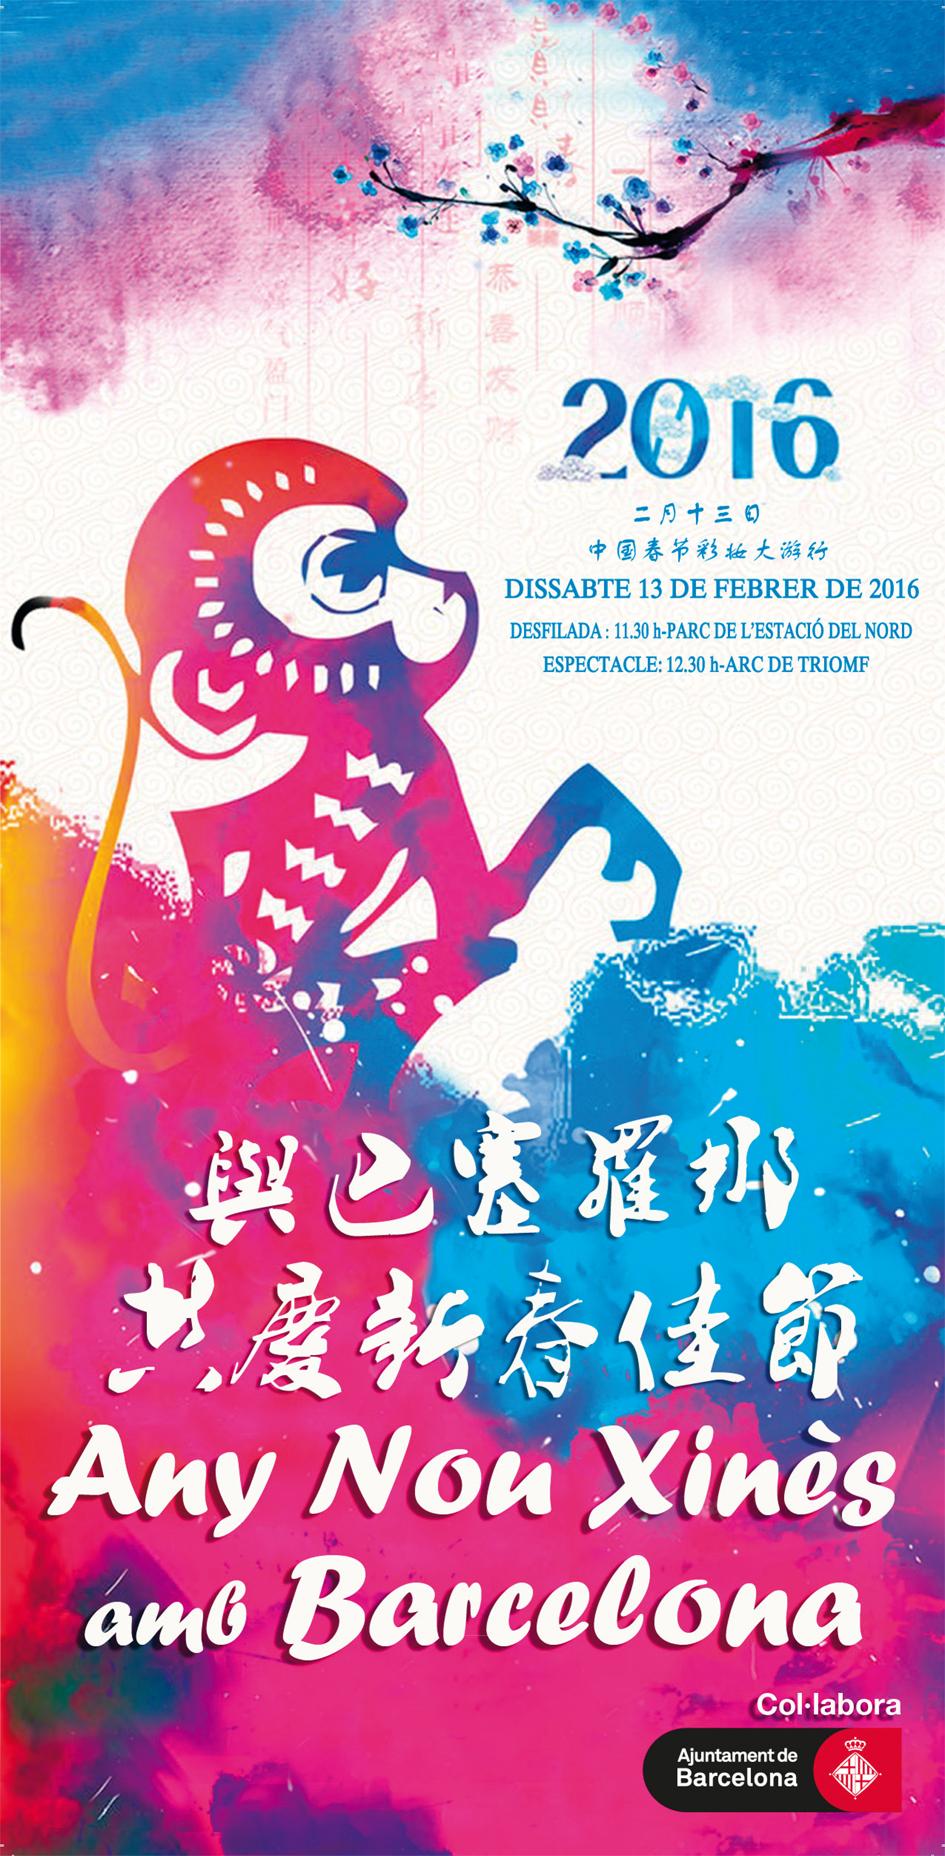 Ven a celebrar el año nuevo chino a Fort Pienc, el año del mono!